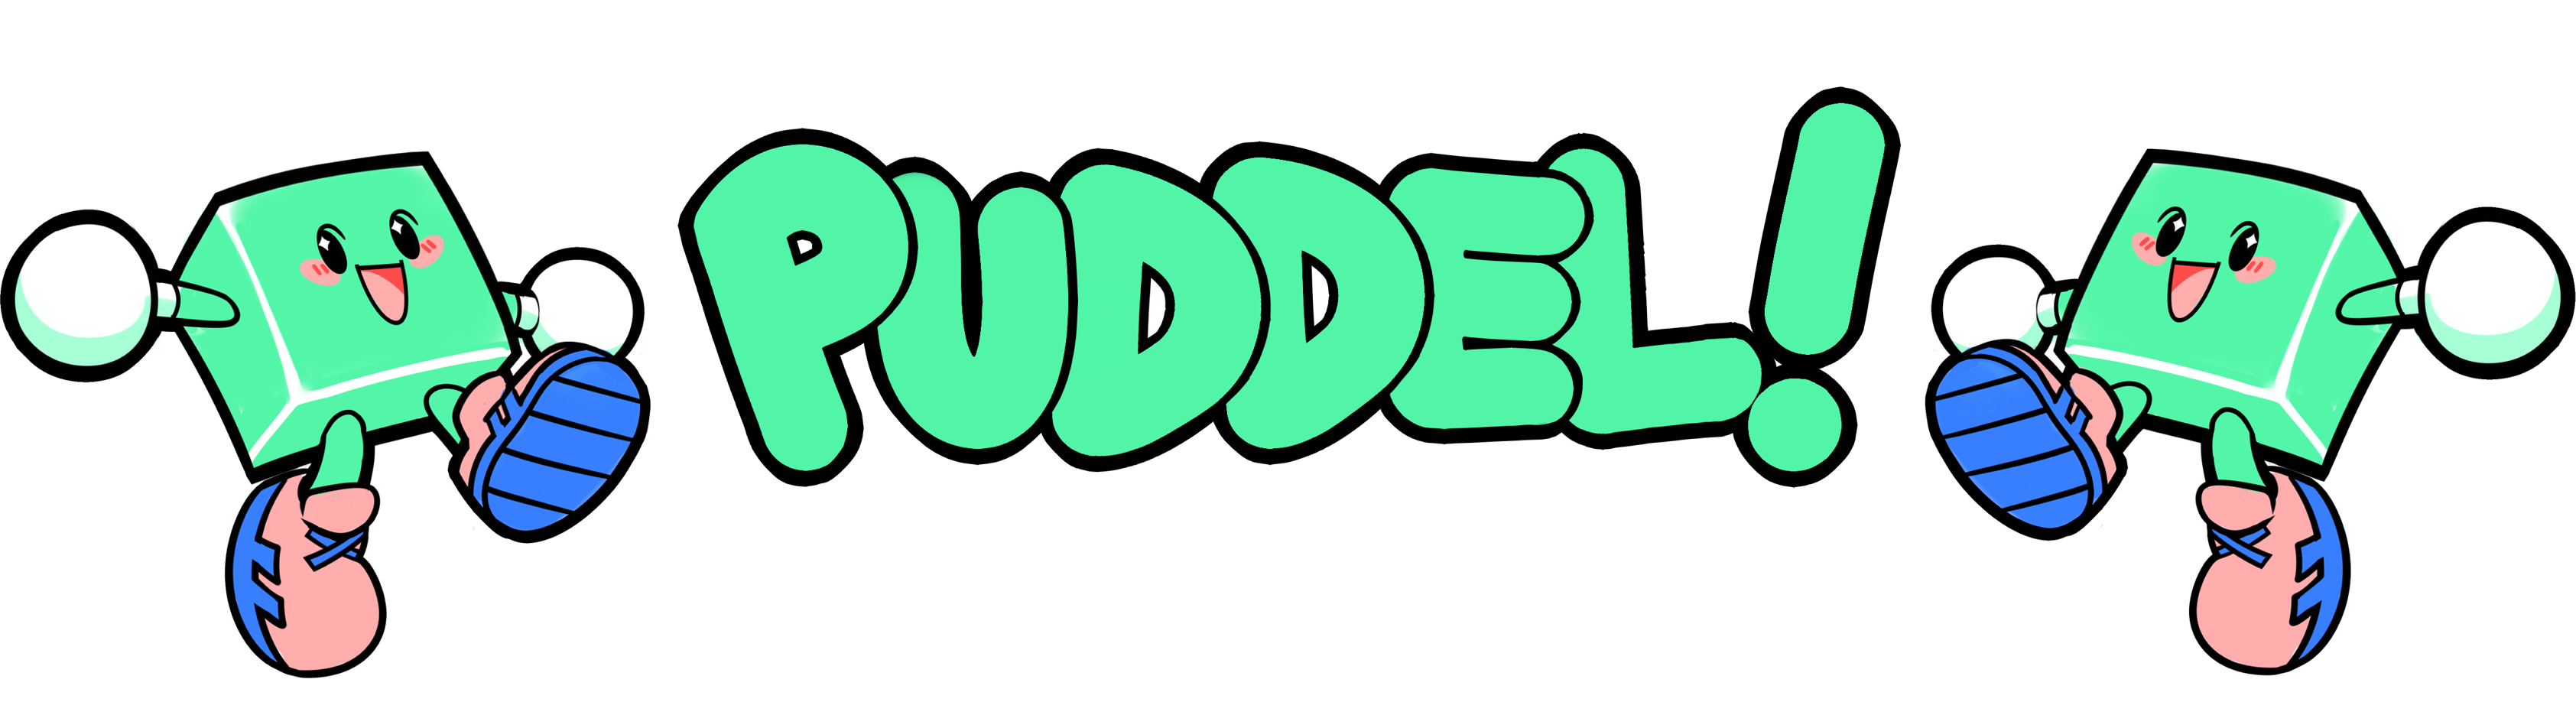 Puddel